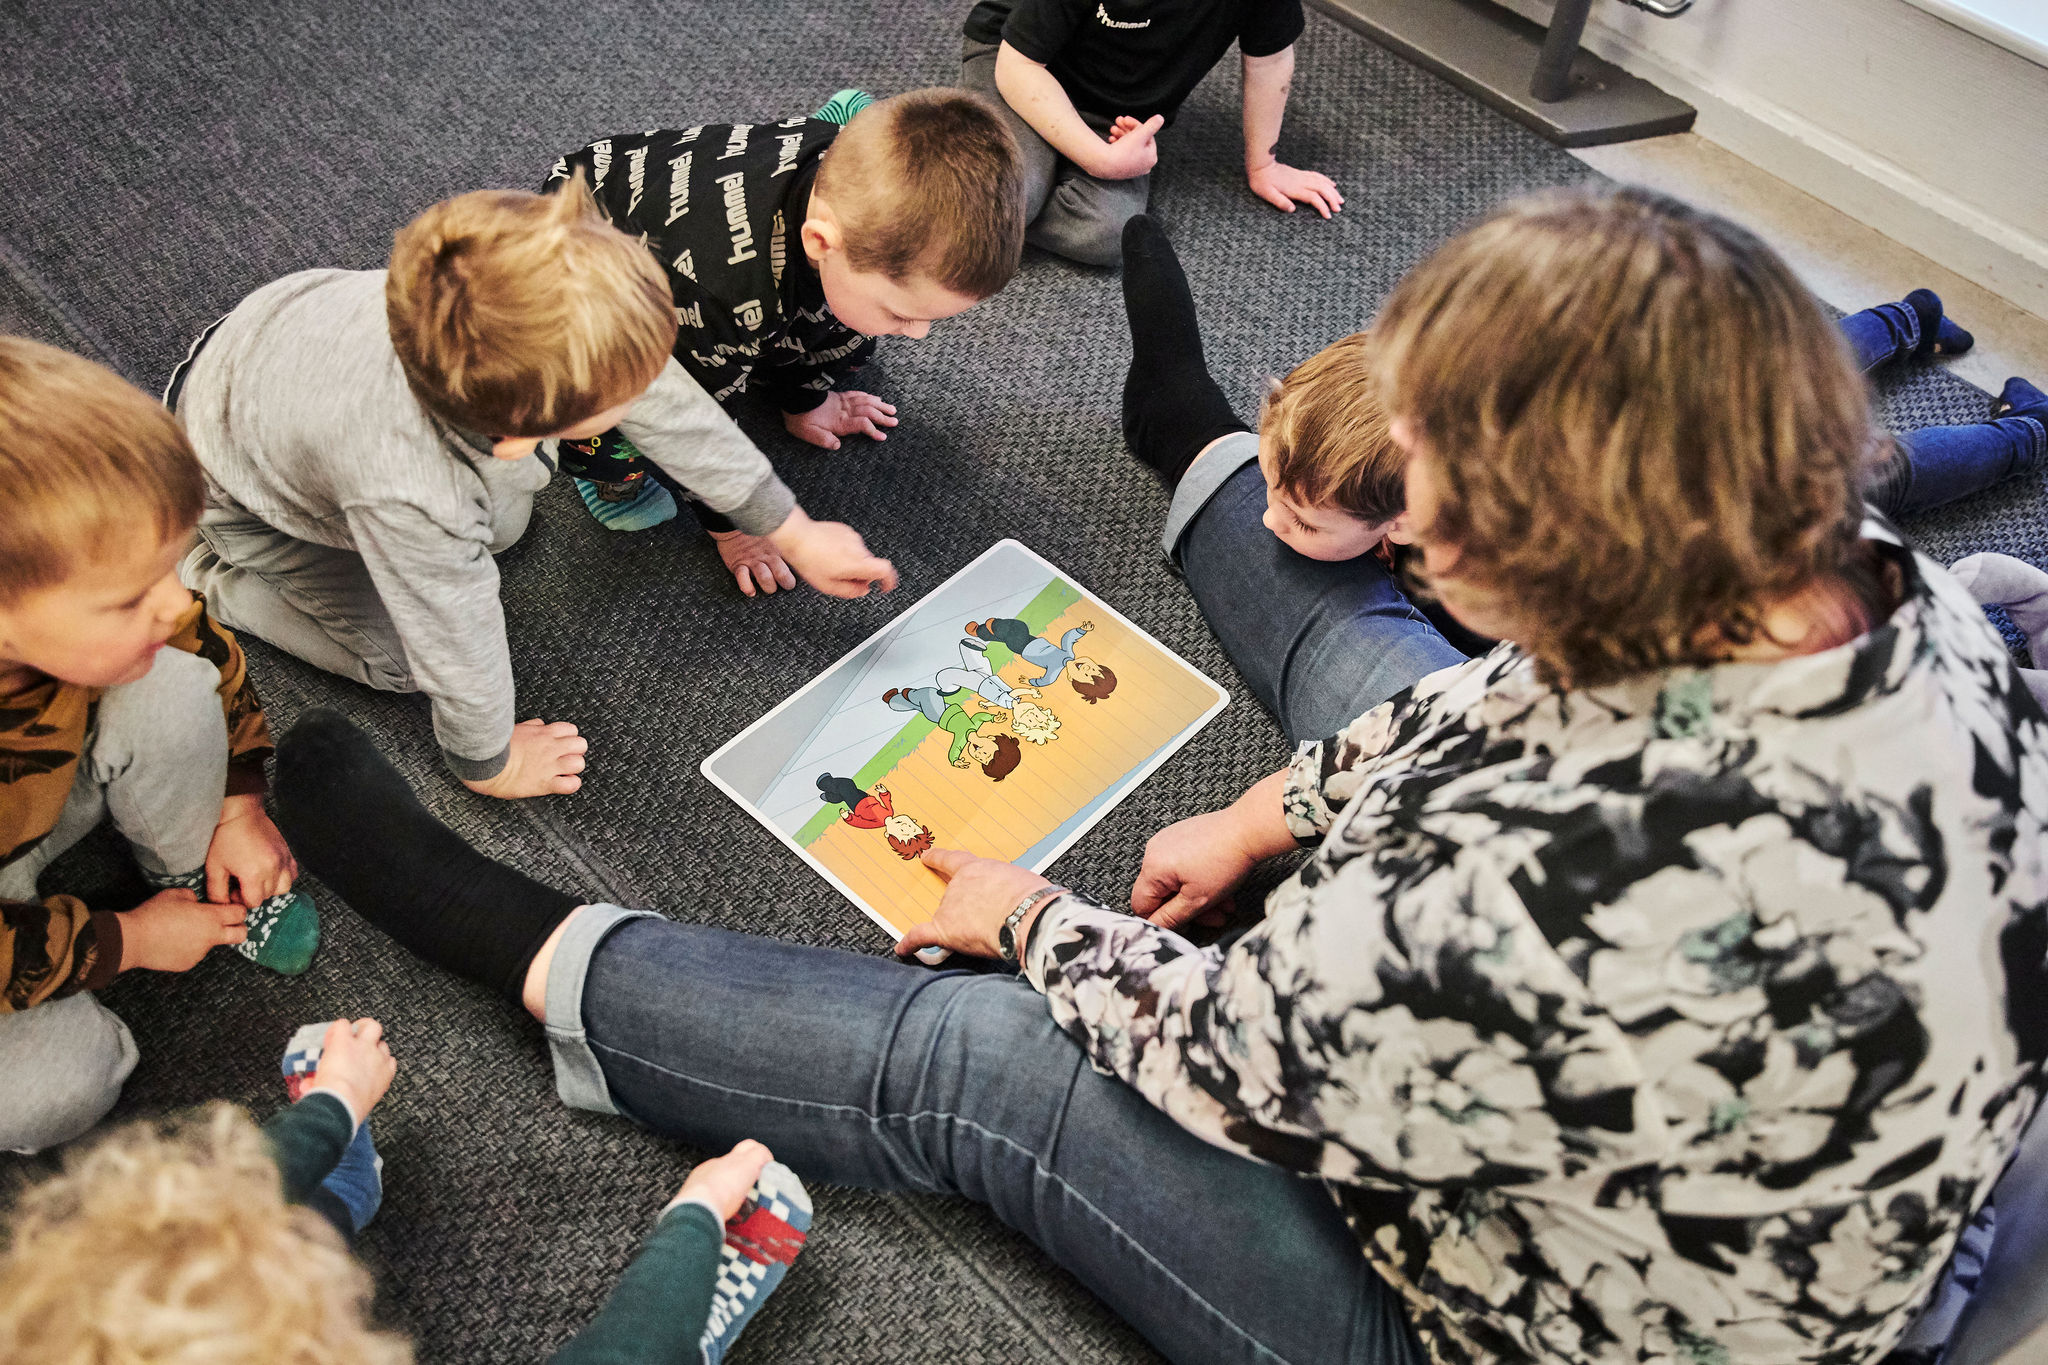 Billede af børnehavebørn, der sidder på gulvet og er optaget af at arbejde med Mary Fondens materiale "Fri for mobberi".